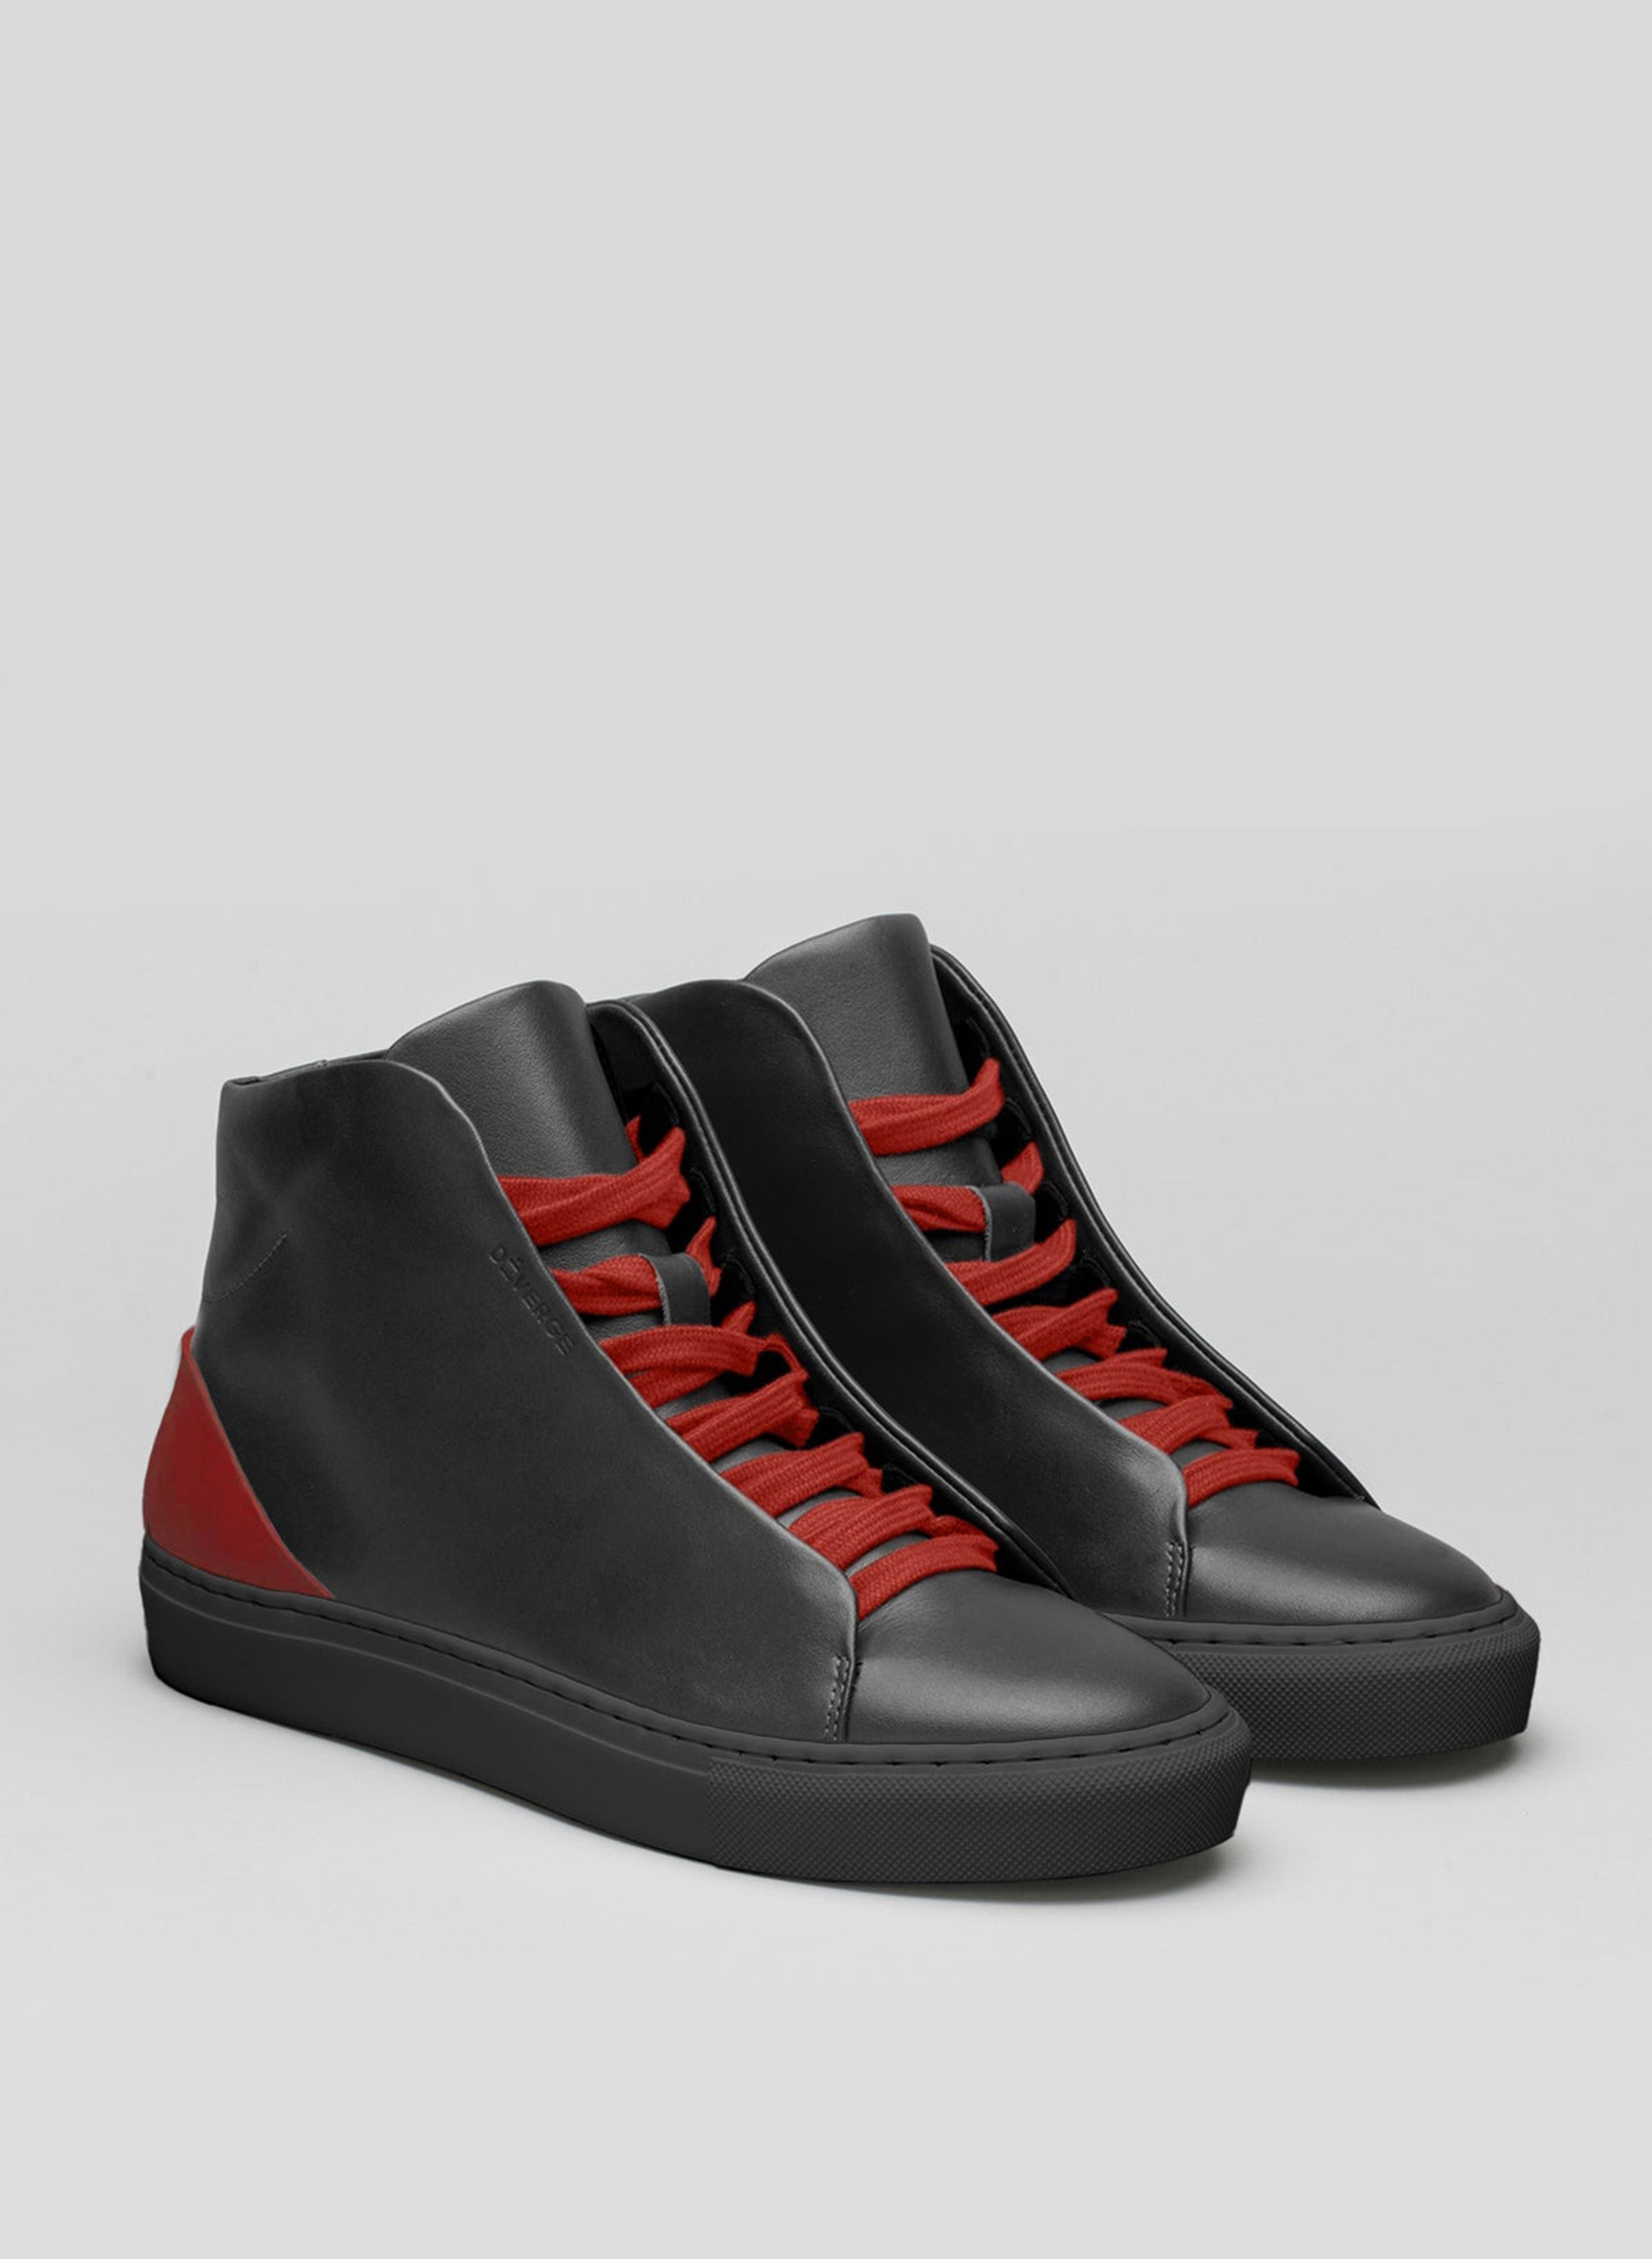 Un paio di scarpe alte nere sneakers con lacci rossi, in mostra le scarpe personalizzate di Diverge.